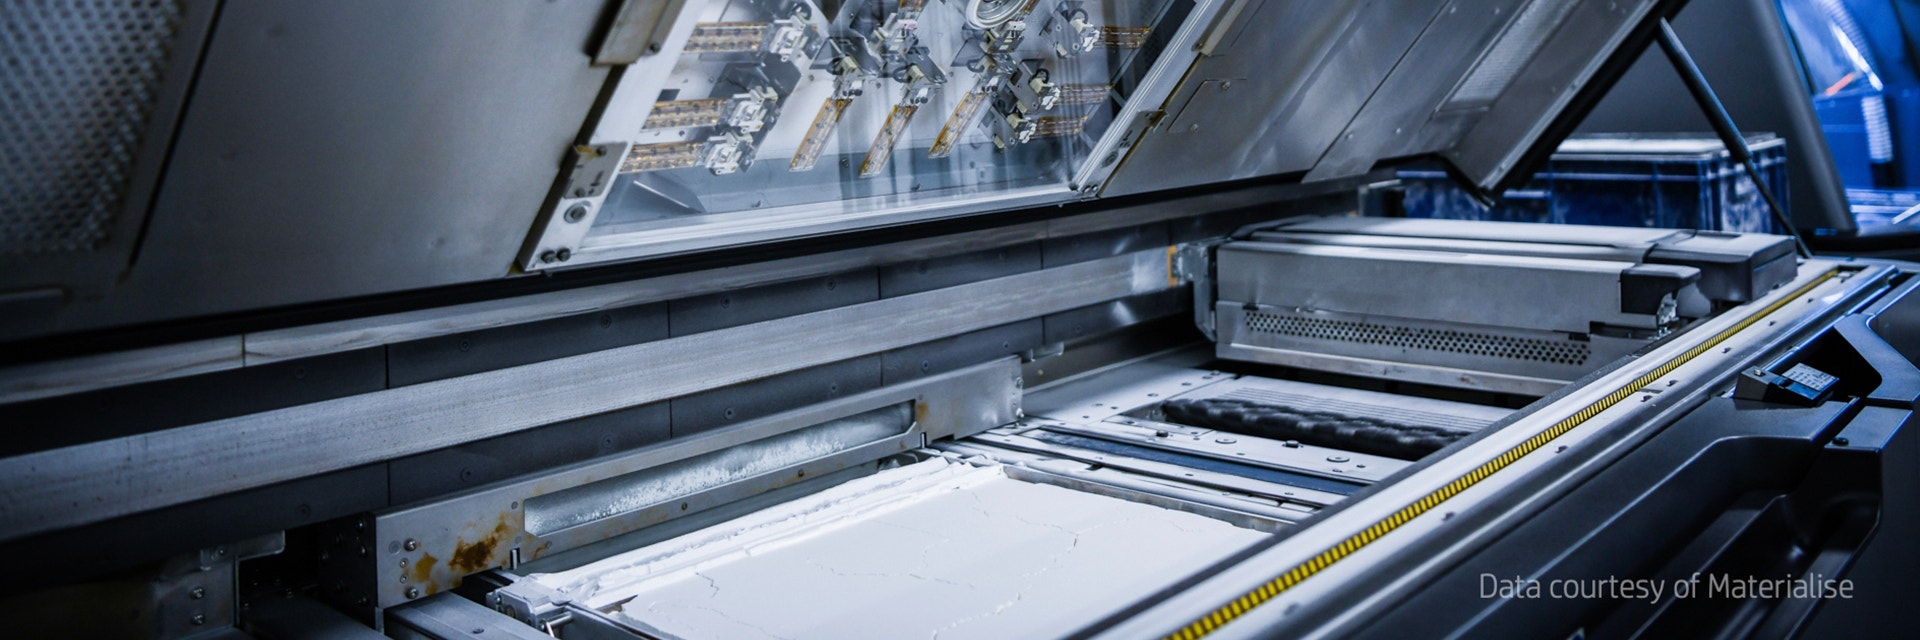 Ein HP Multi Jet Fusion-Drucker in der Materialise-Zentrale mit geöffnetem Deckel